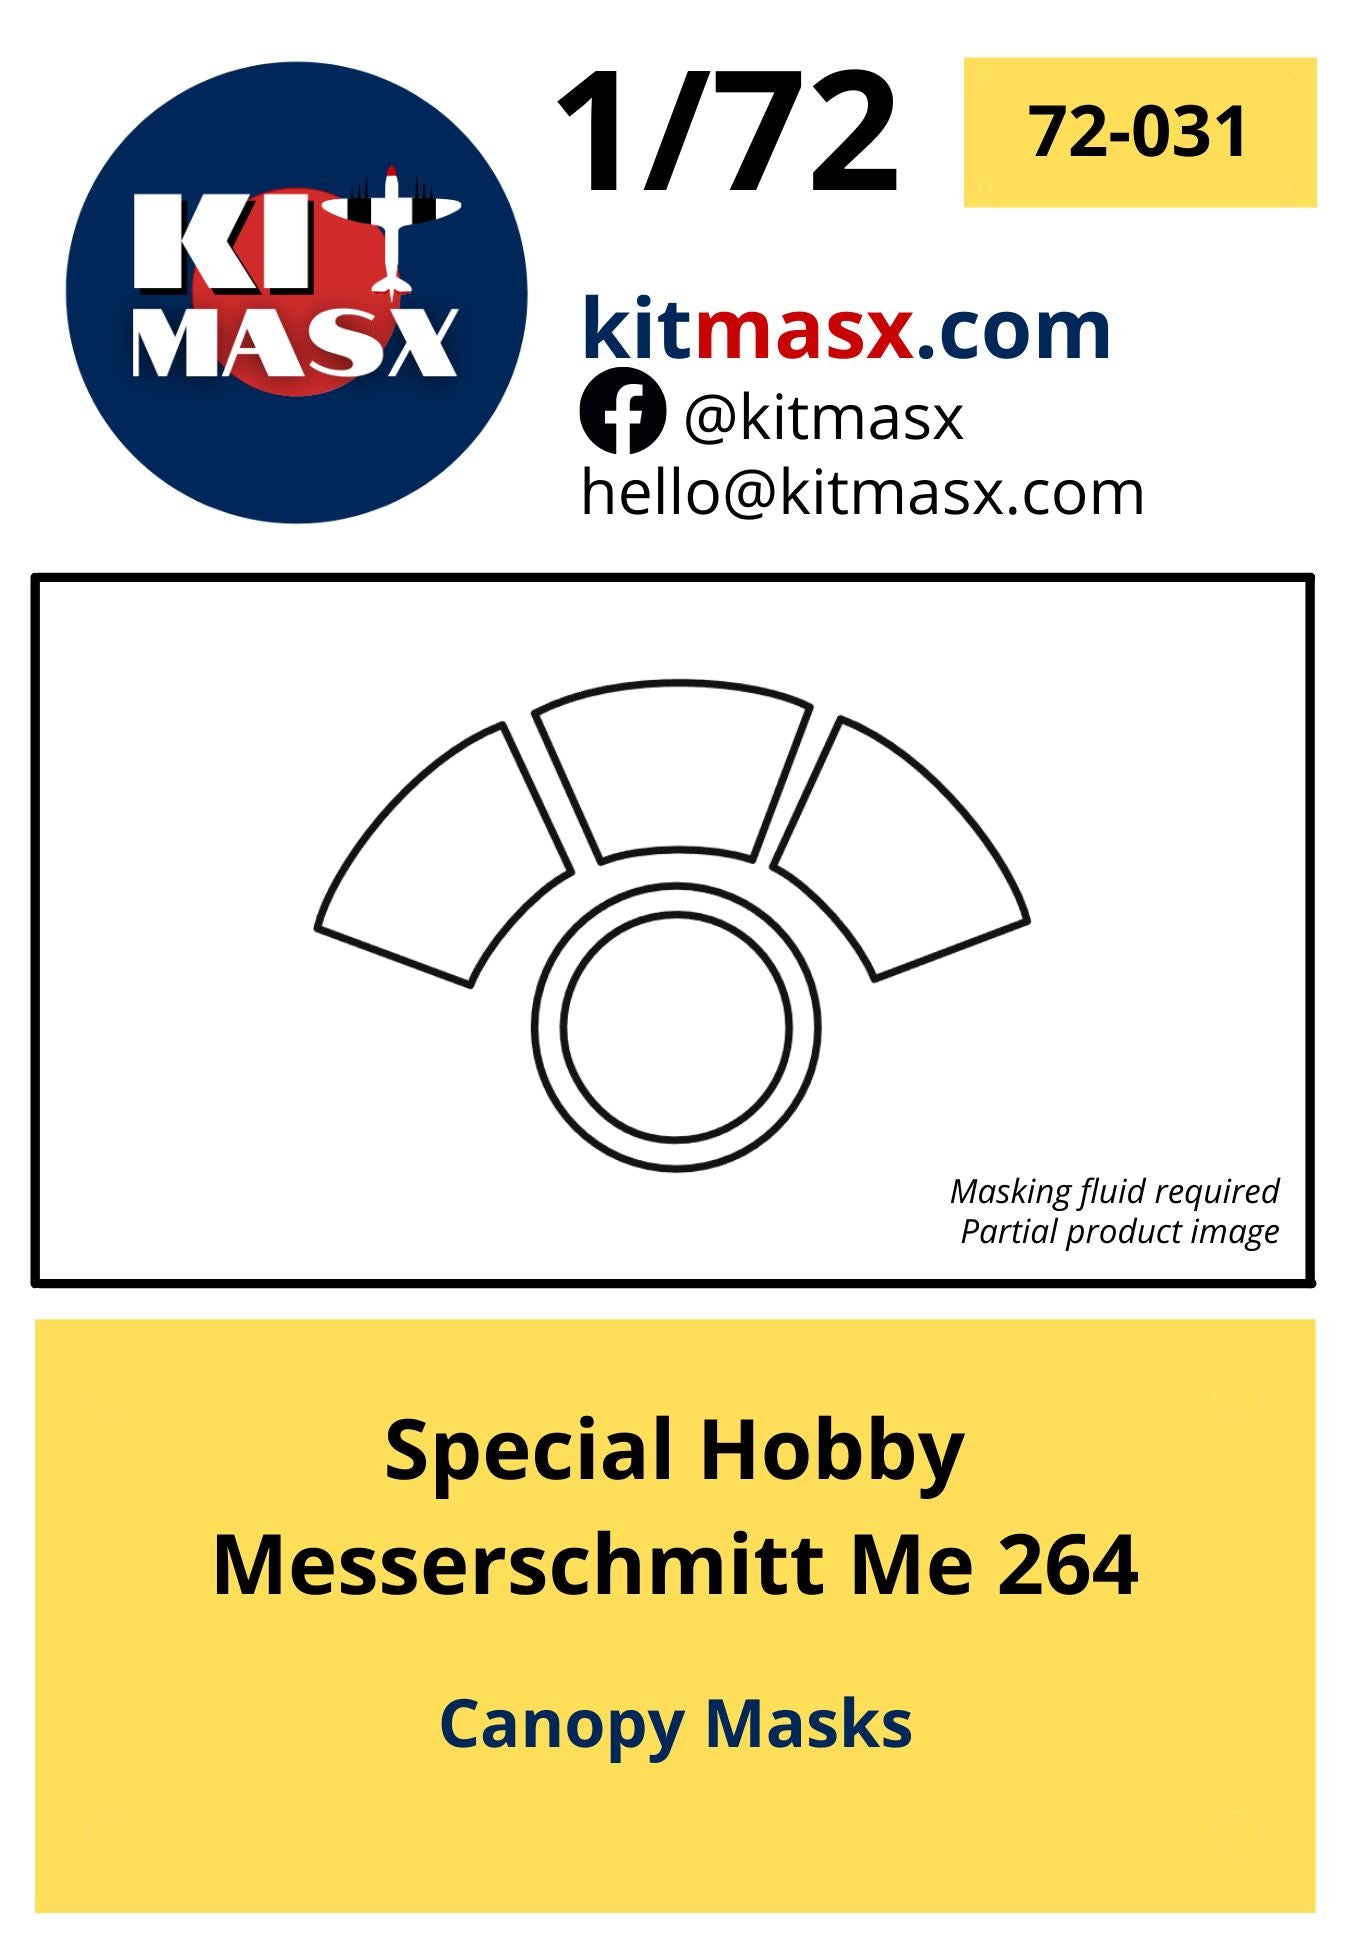 Special Hobby Messerschmitt Me 264 Scale Model Accessories Kit Masx 